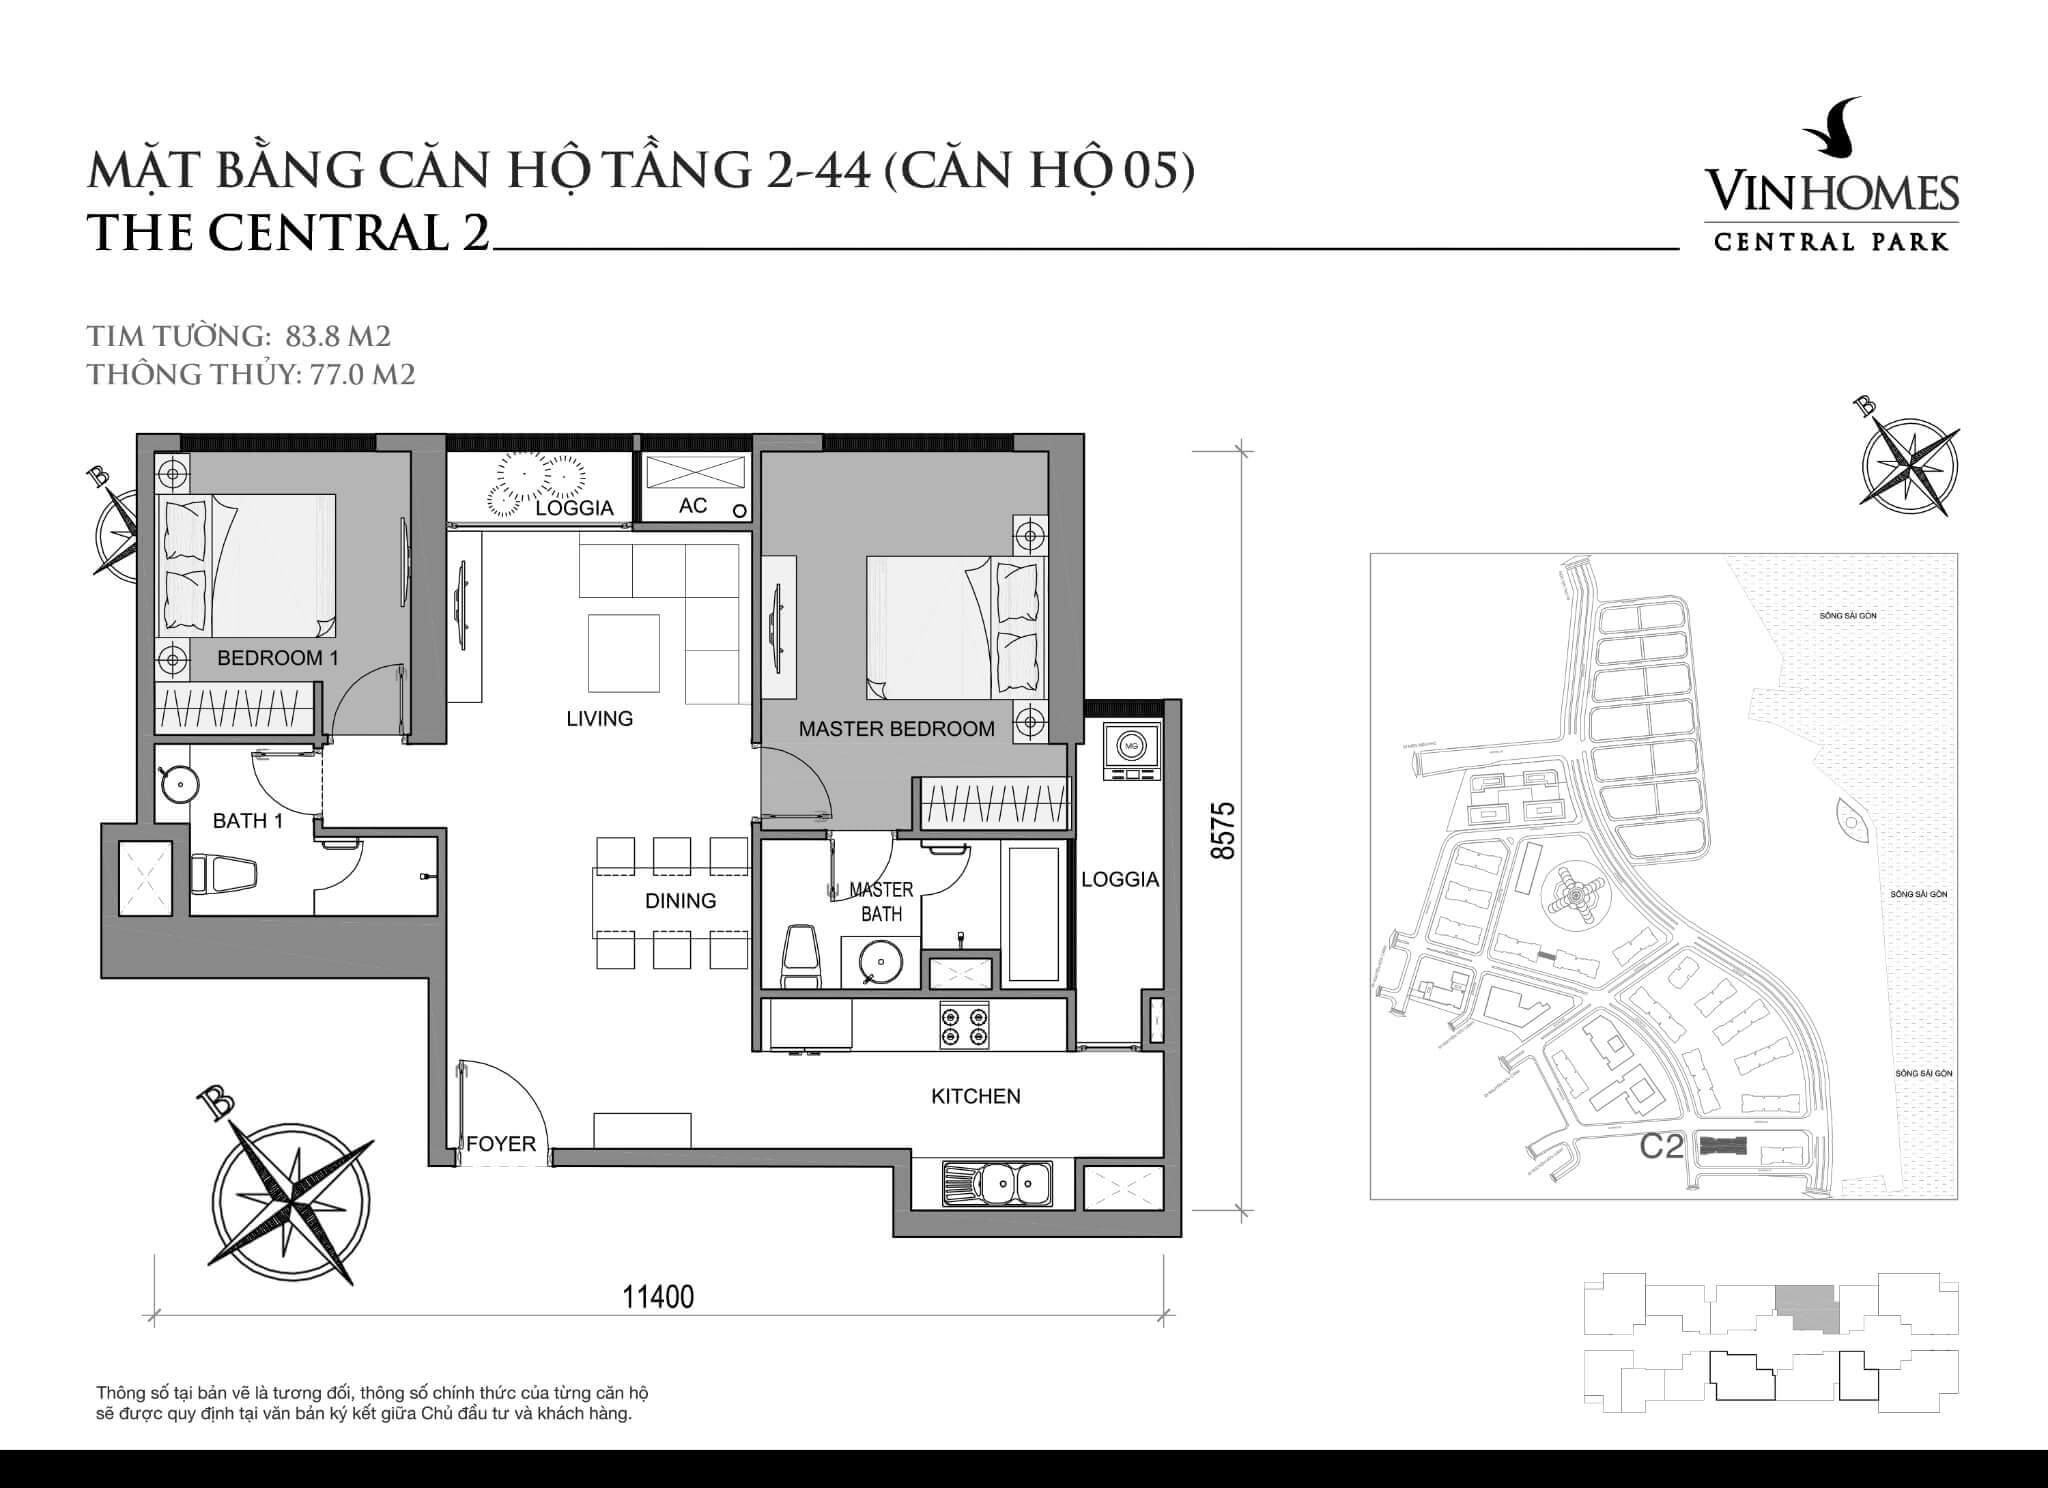 layout căn hộ số 5 tầng 2-44 Central 2